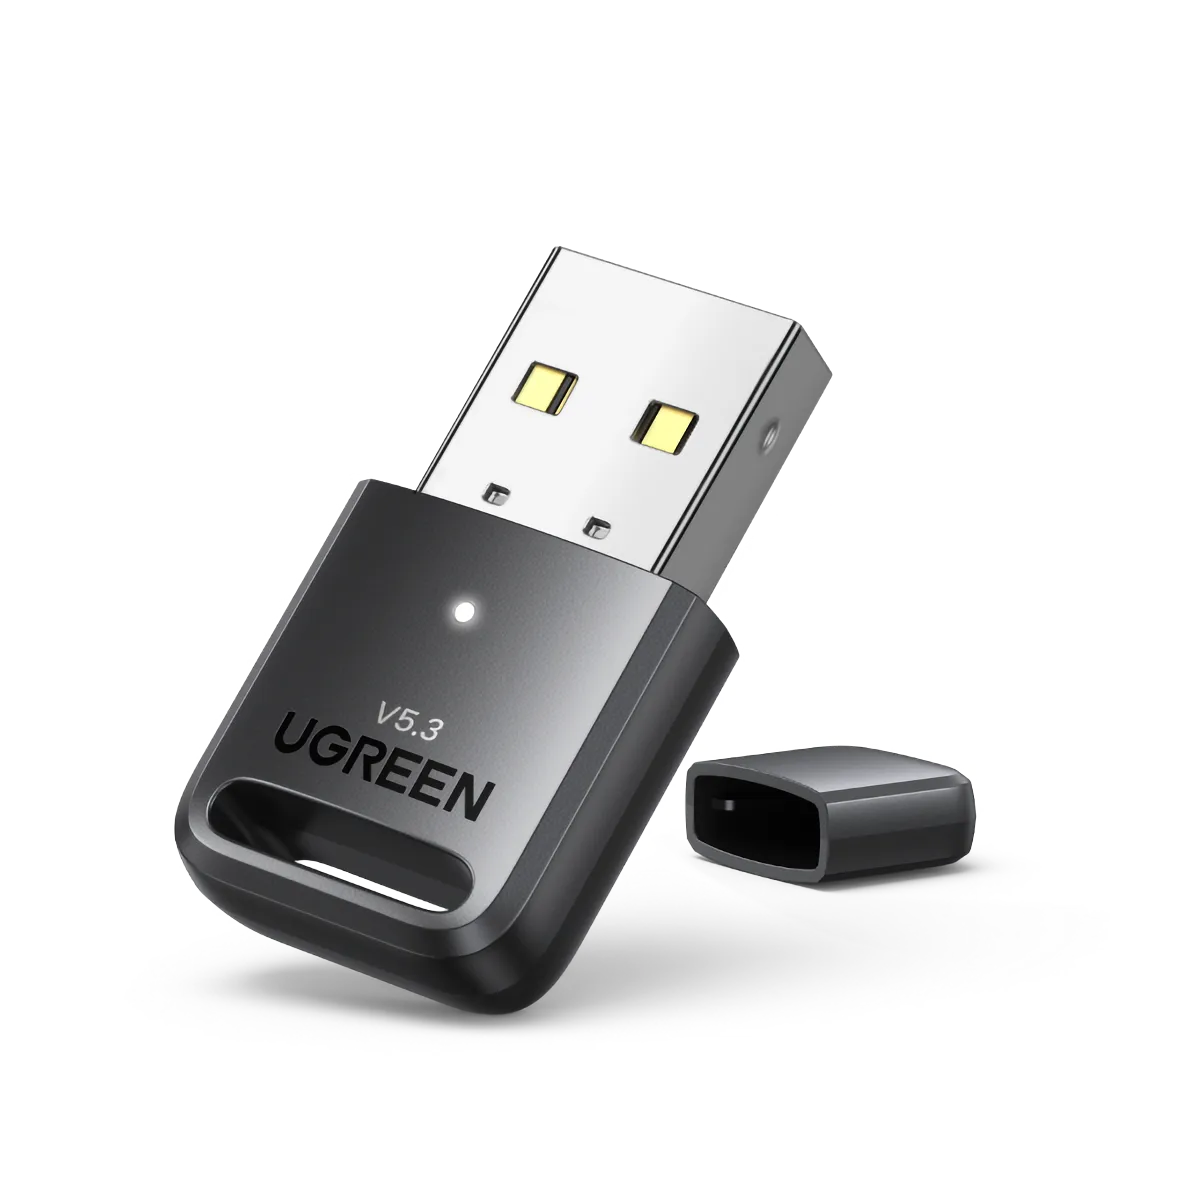 Adattatore USB bluetooth 5.3 Ugreen senza driver WIN10 gratuito, ricevitore audio per PC